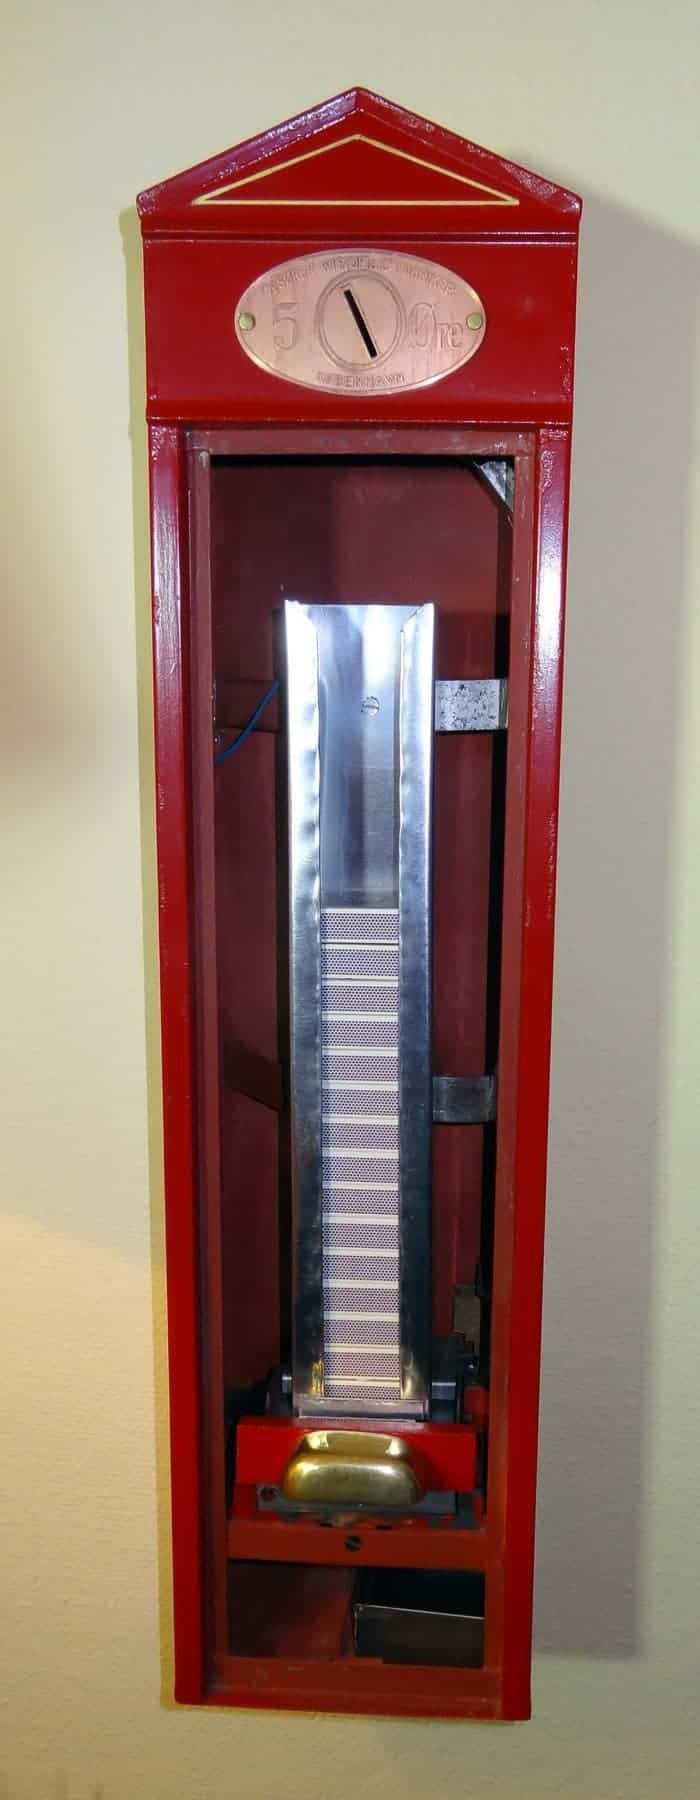 Rød Wistoft tændstiksautomat - ny front, skilt og bakke (3)